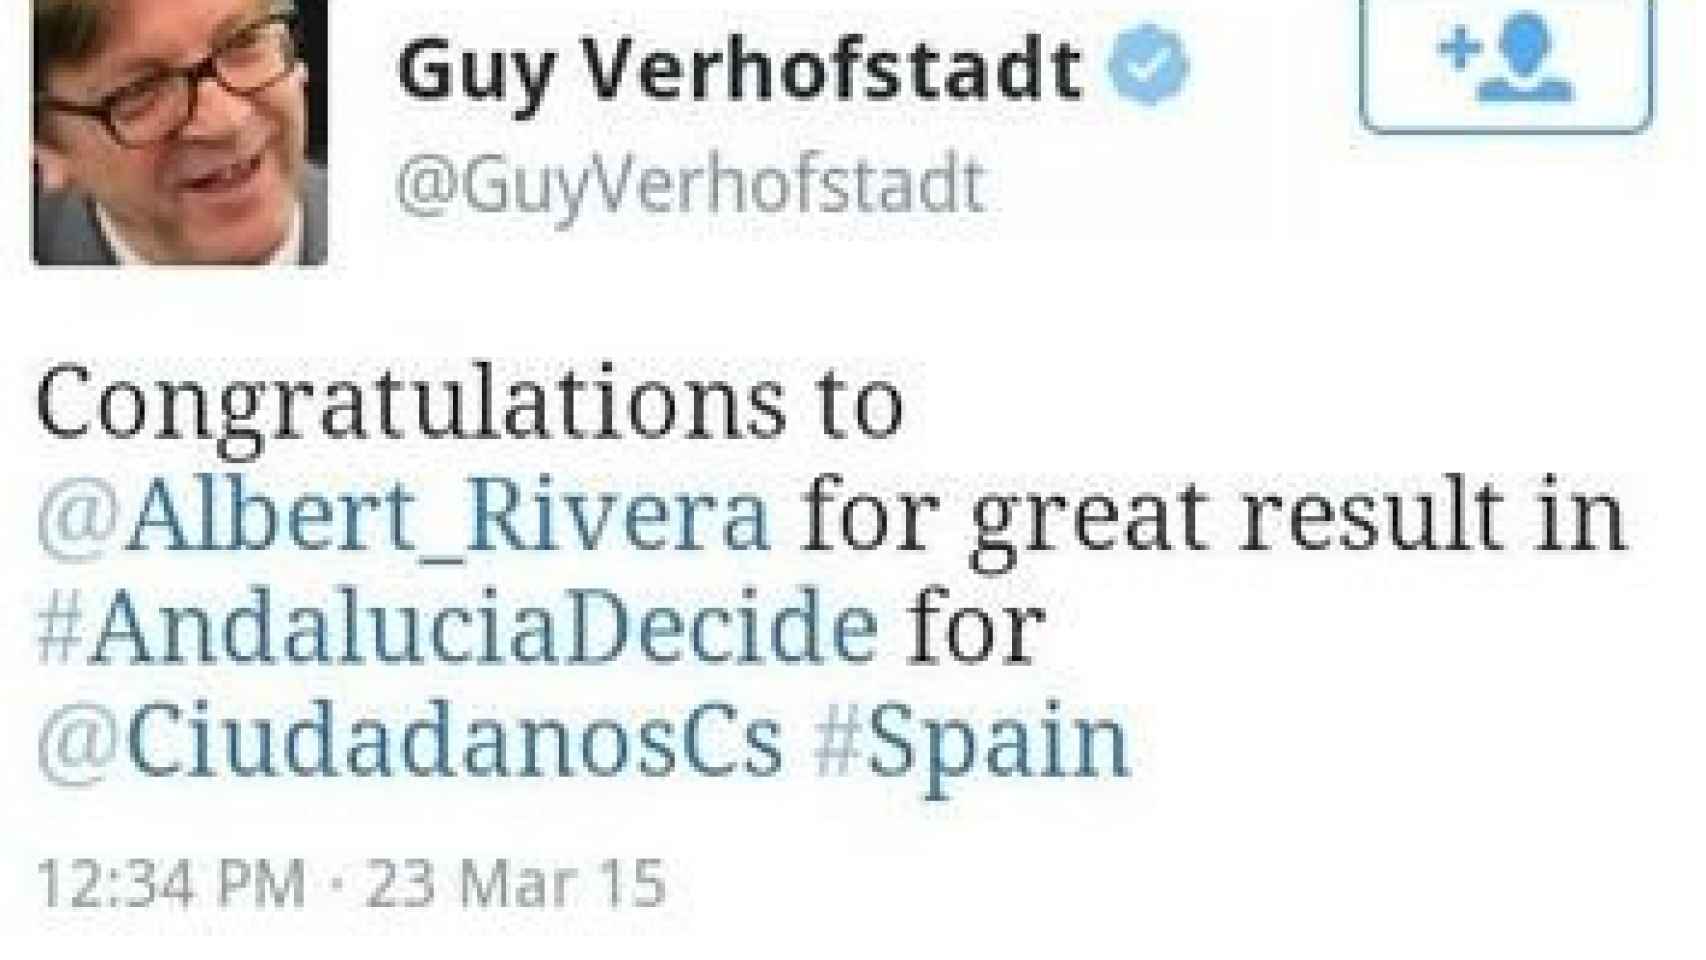 Tuit de Guy Verhofstadt felicitando a Albert Rivera